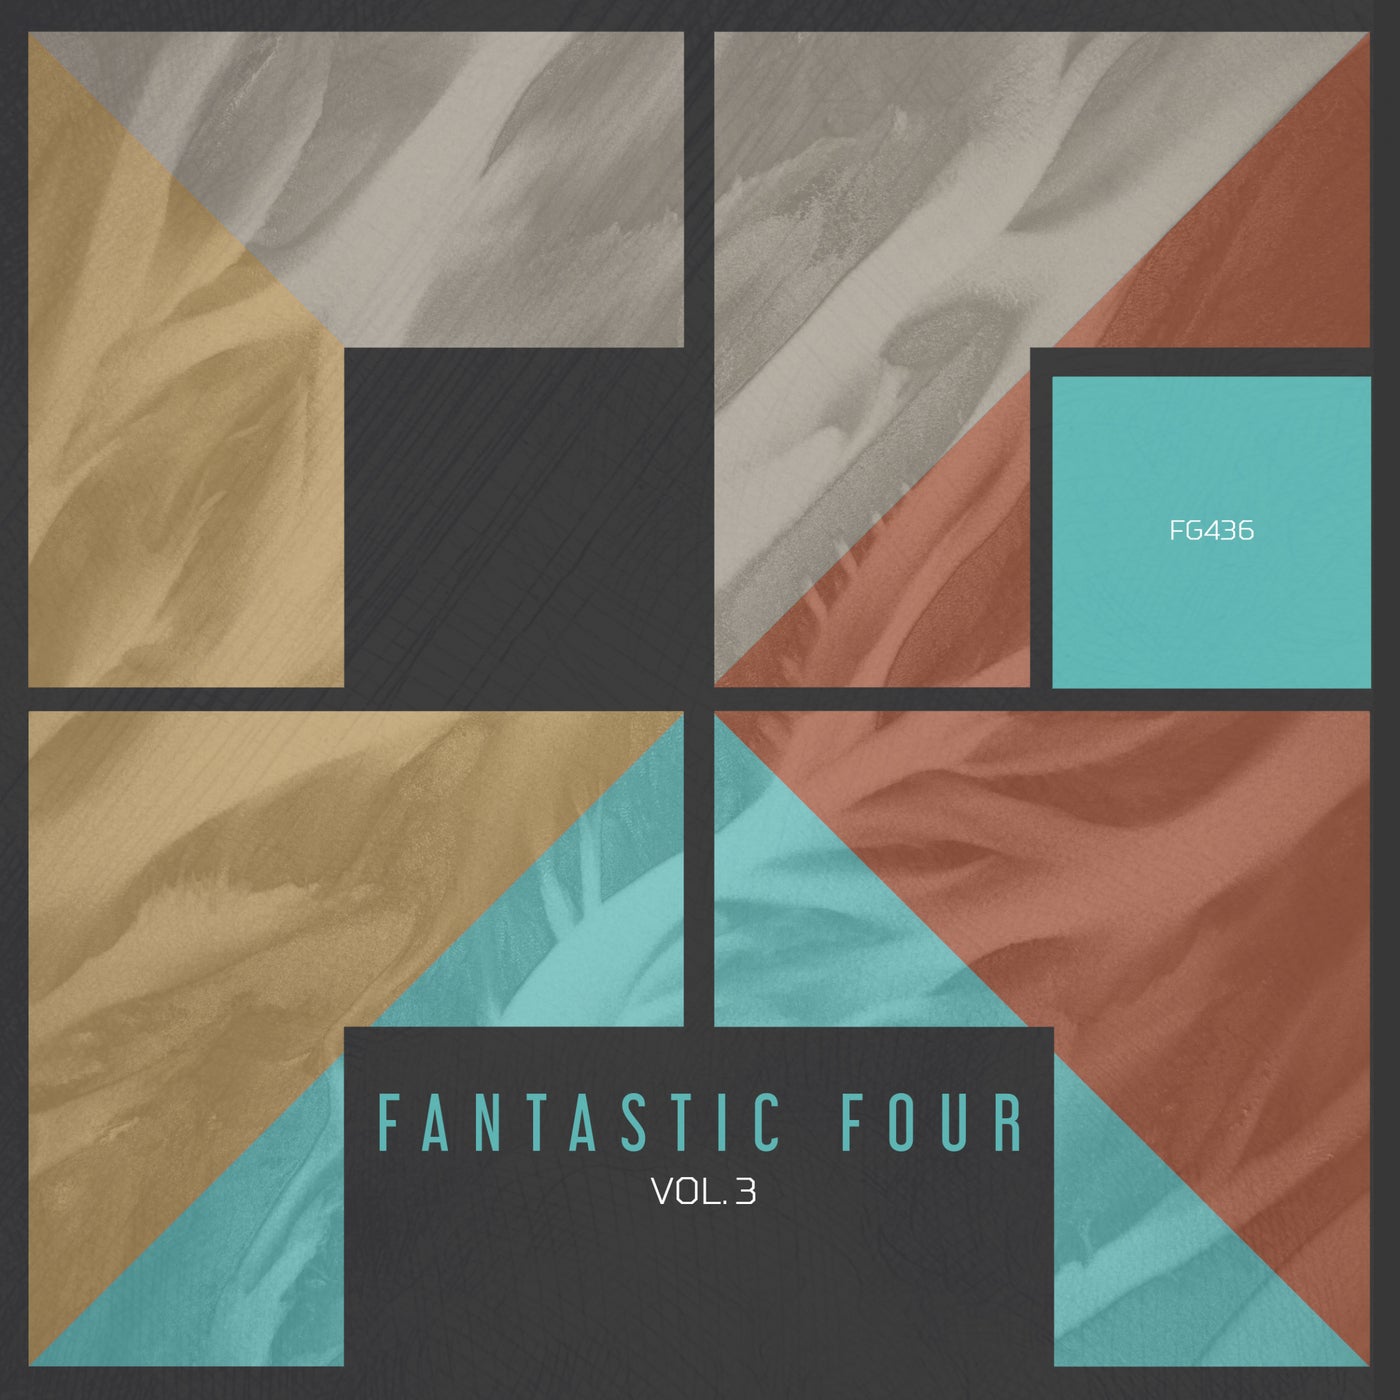 Fantastic Four vol.3